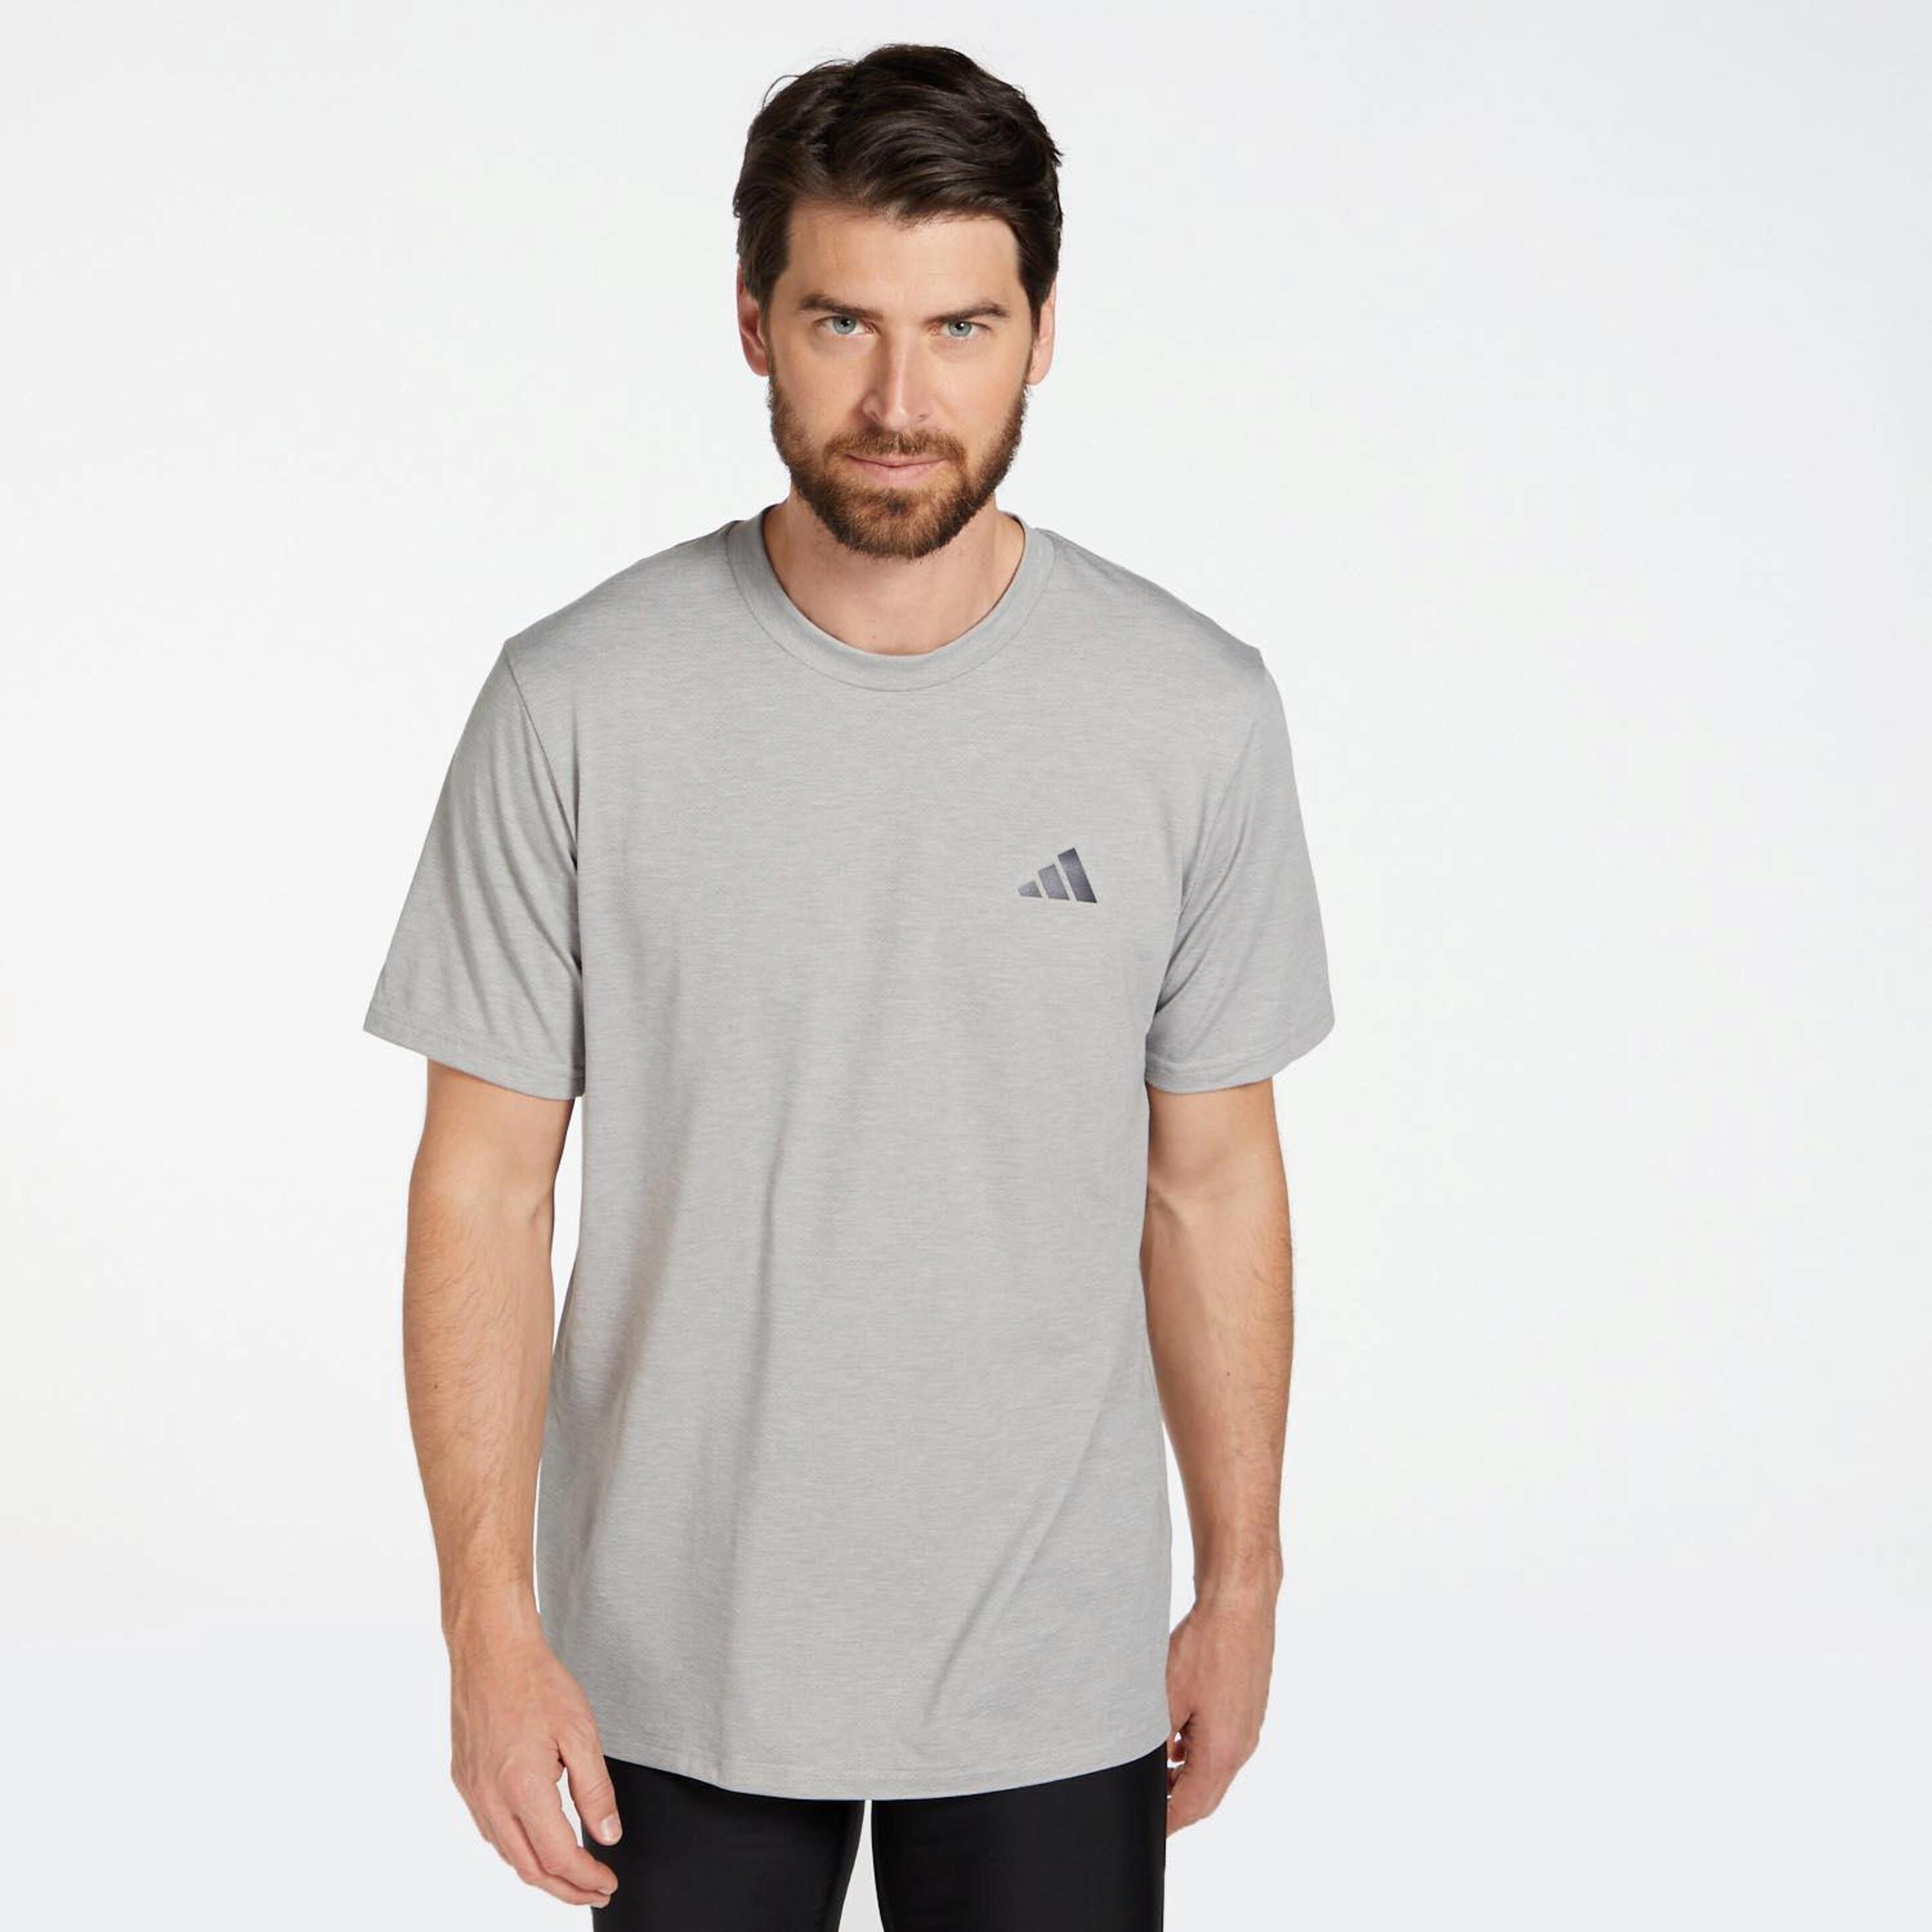 adidas Training - gris - Camiseta Running Hombre